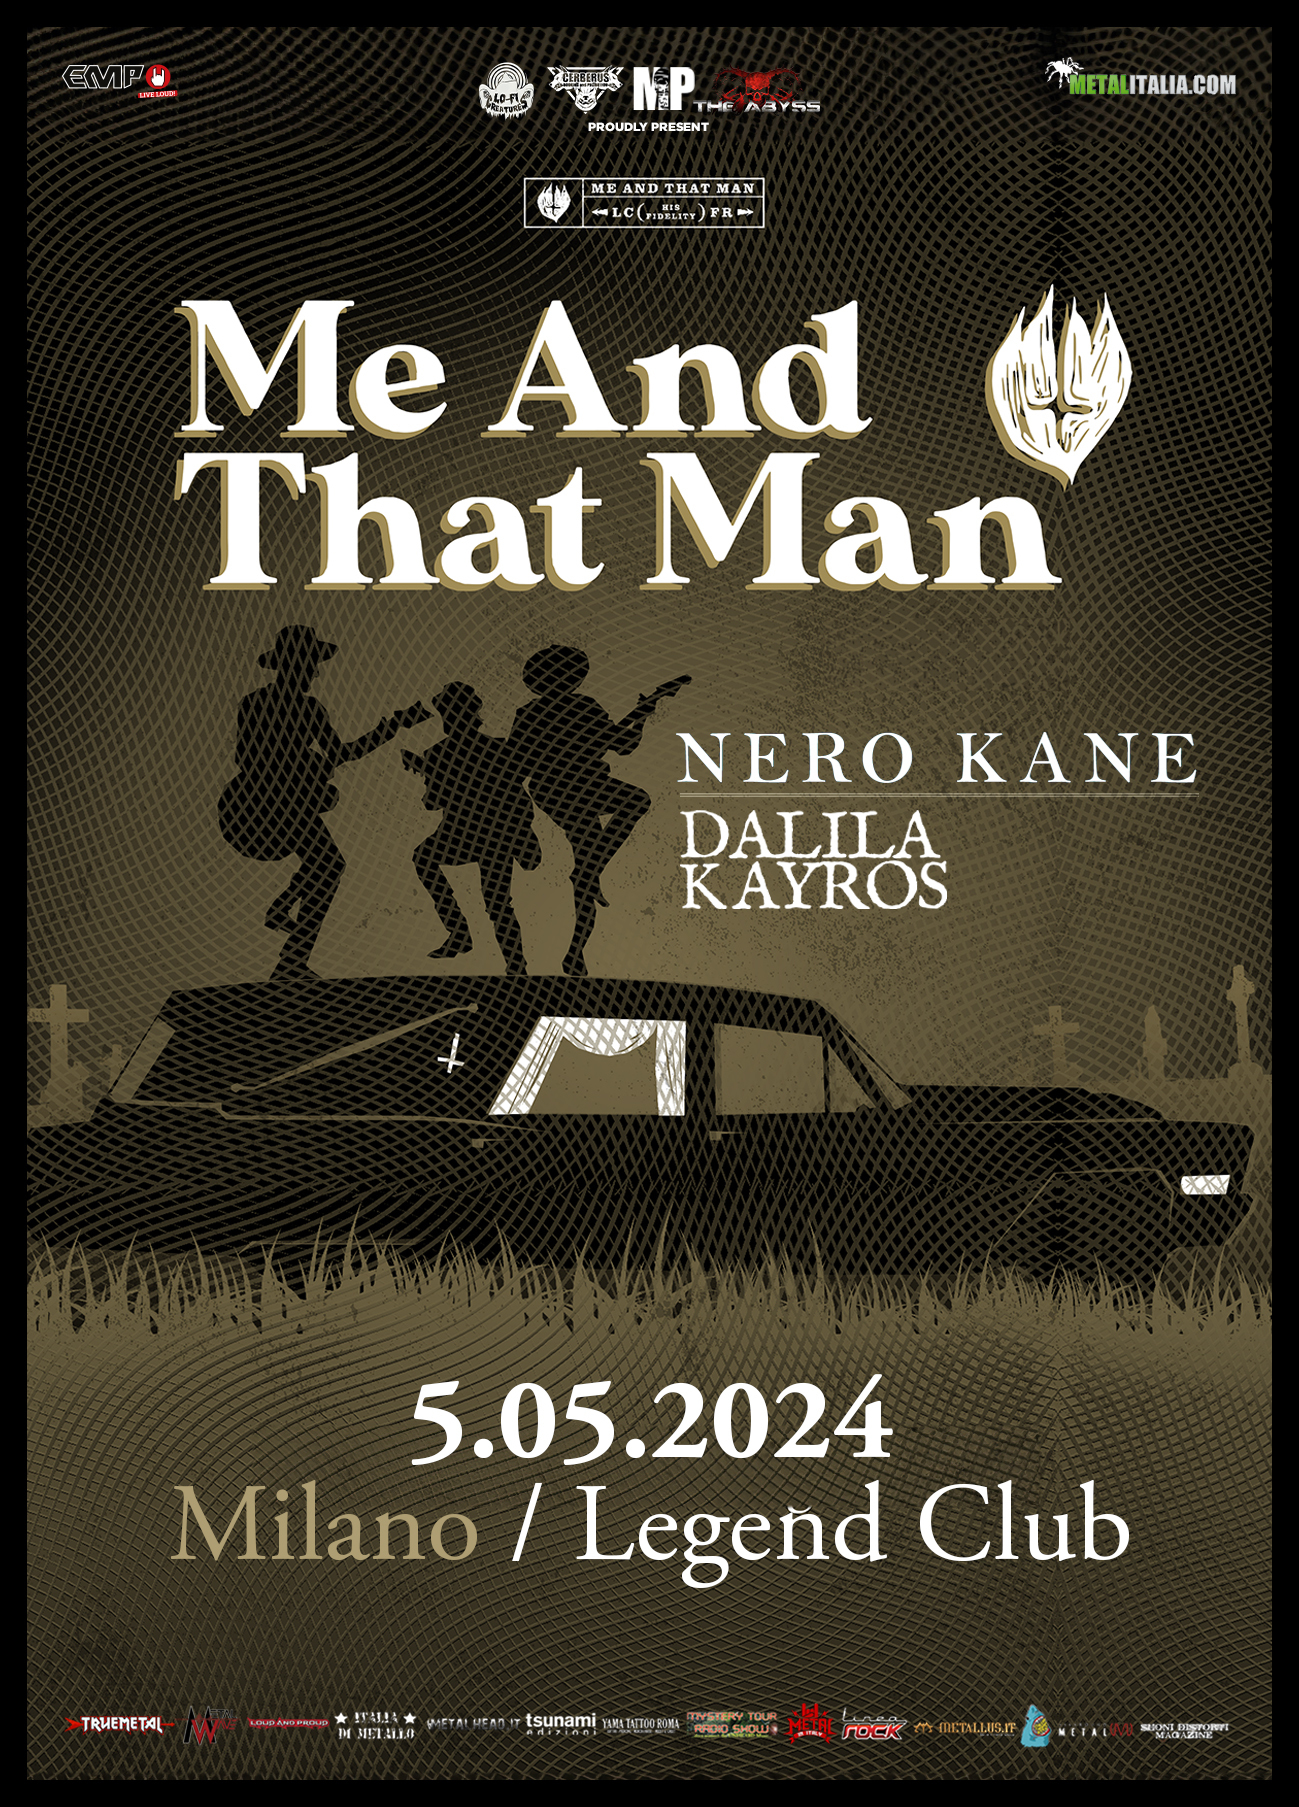 MEAND THAT MAN + NERO KANE + DALILA KAIROS @ @Legend Club – Milano